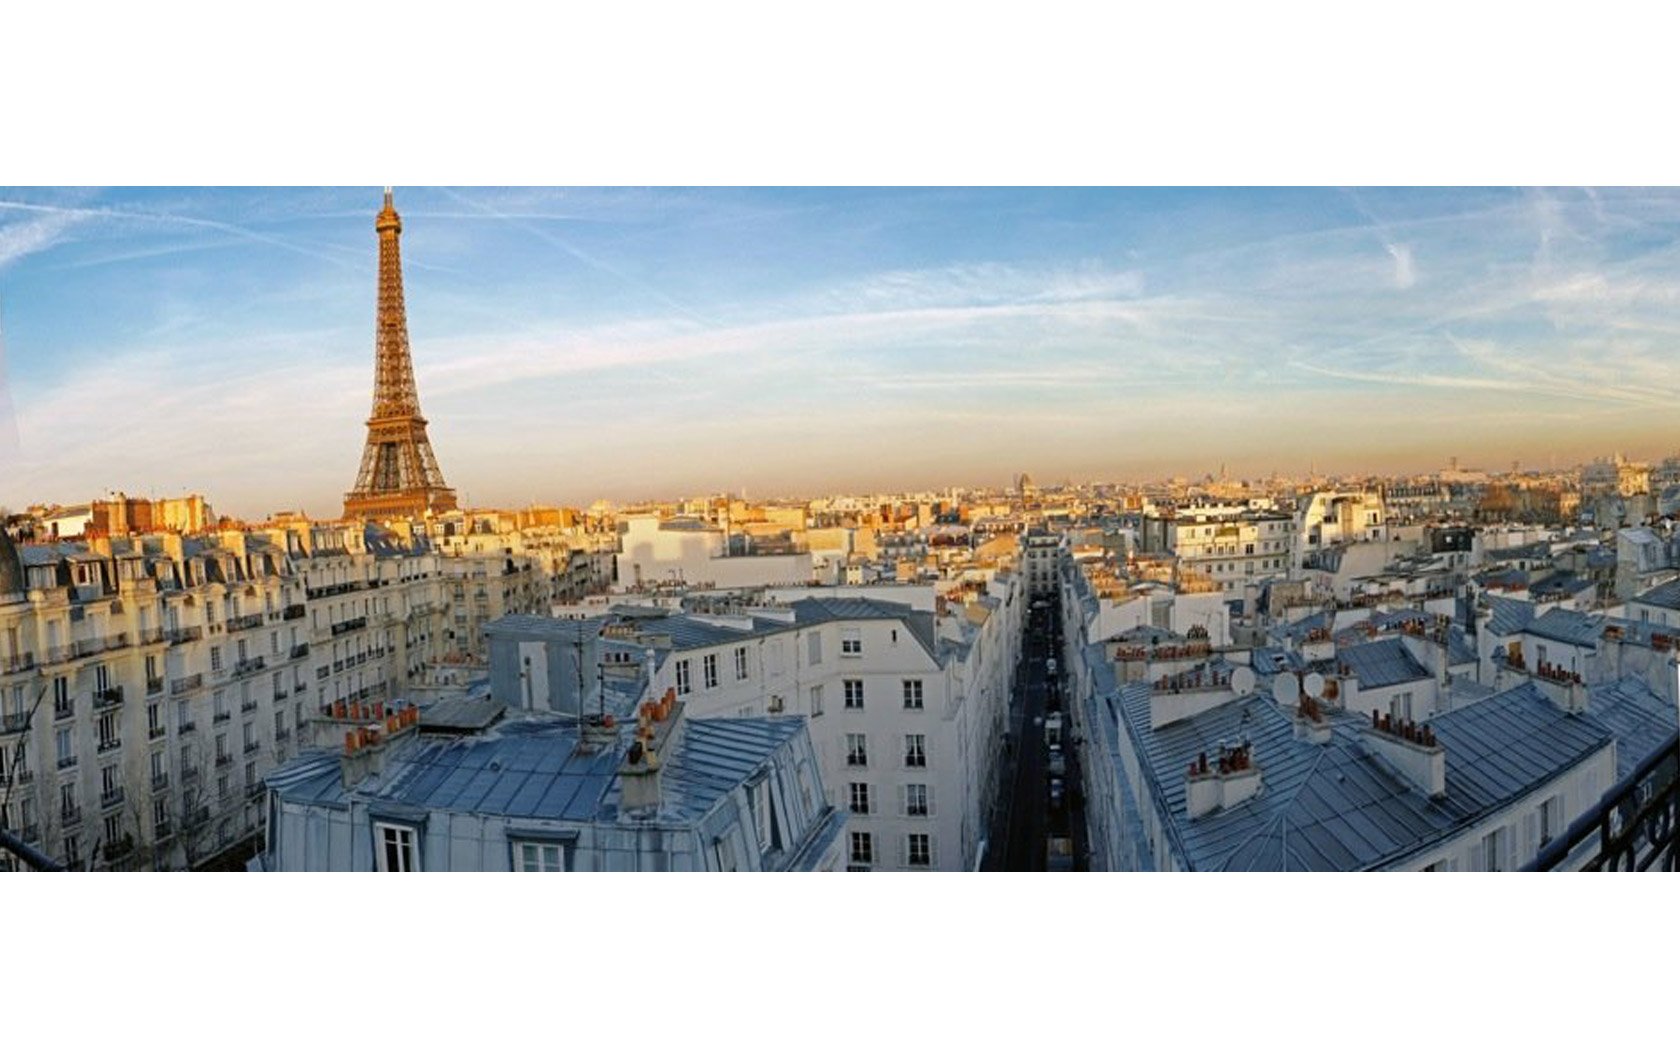 Incredible Paris Views, Incredible Paris Memories!